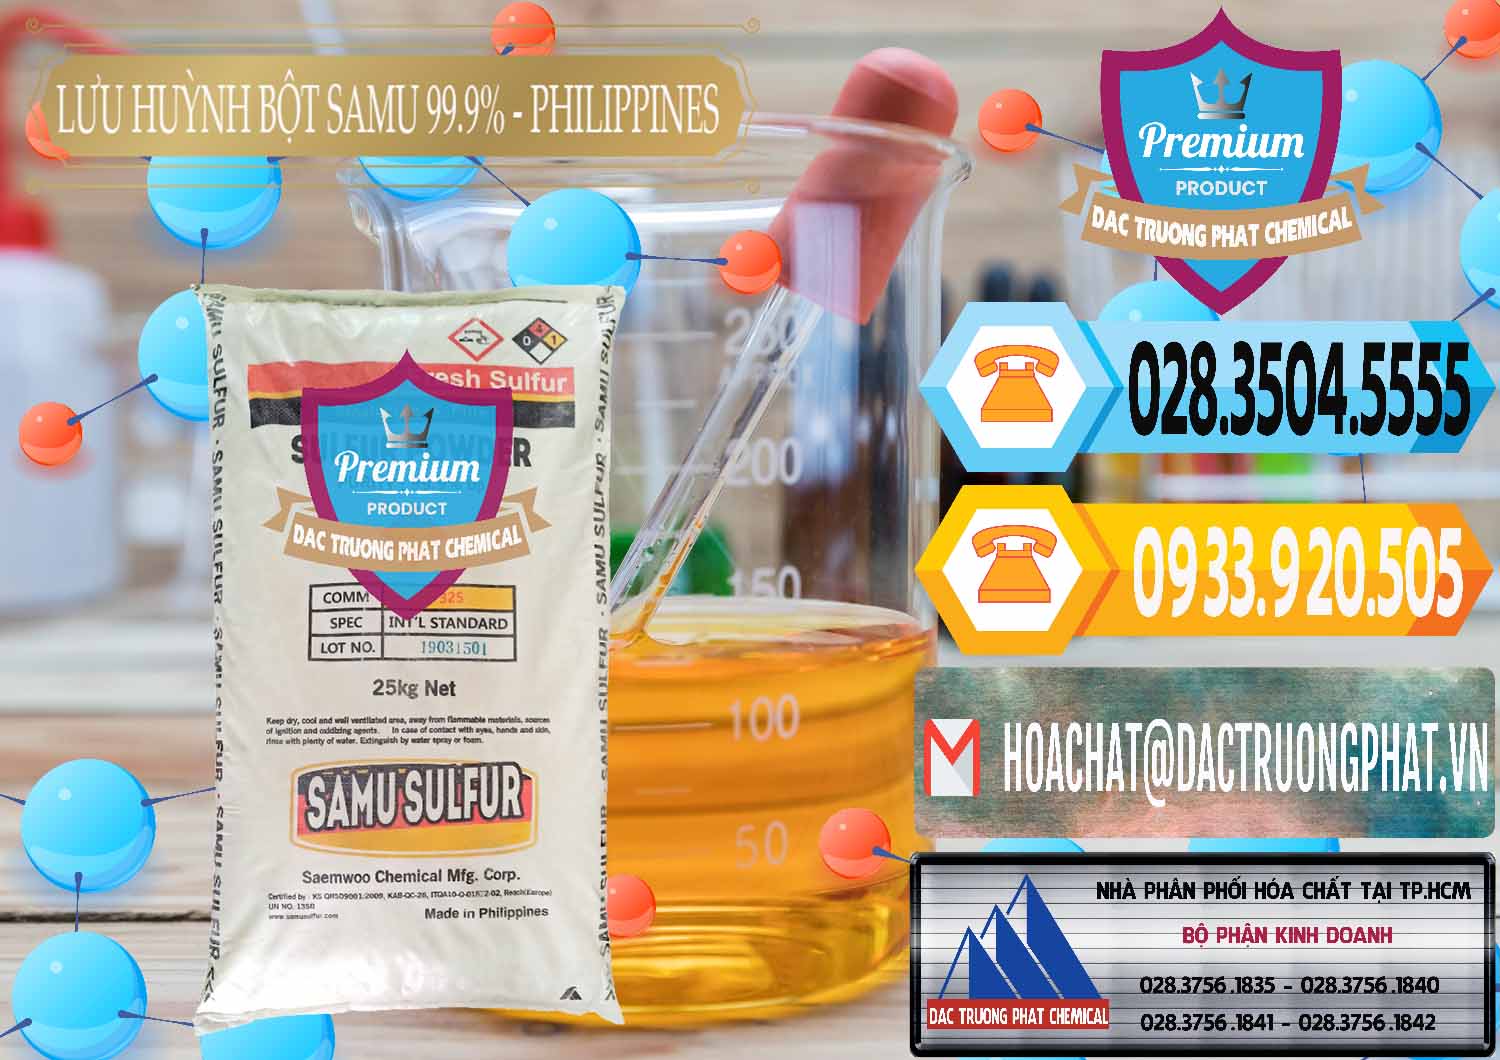 Cty chuyên nhập khẩu & bán Lưu huỳnh Bột - Sulfur Powder Samu Philippines - 0201 - Nơi cung cấp _ phân phối hóa chất tại TP.HCM - hoachattayrua.net